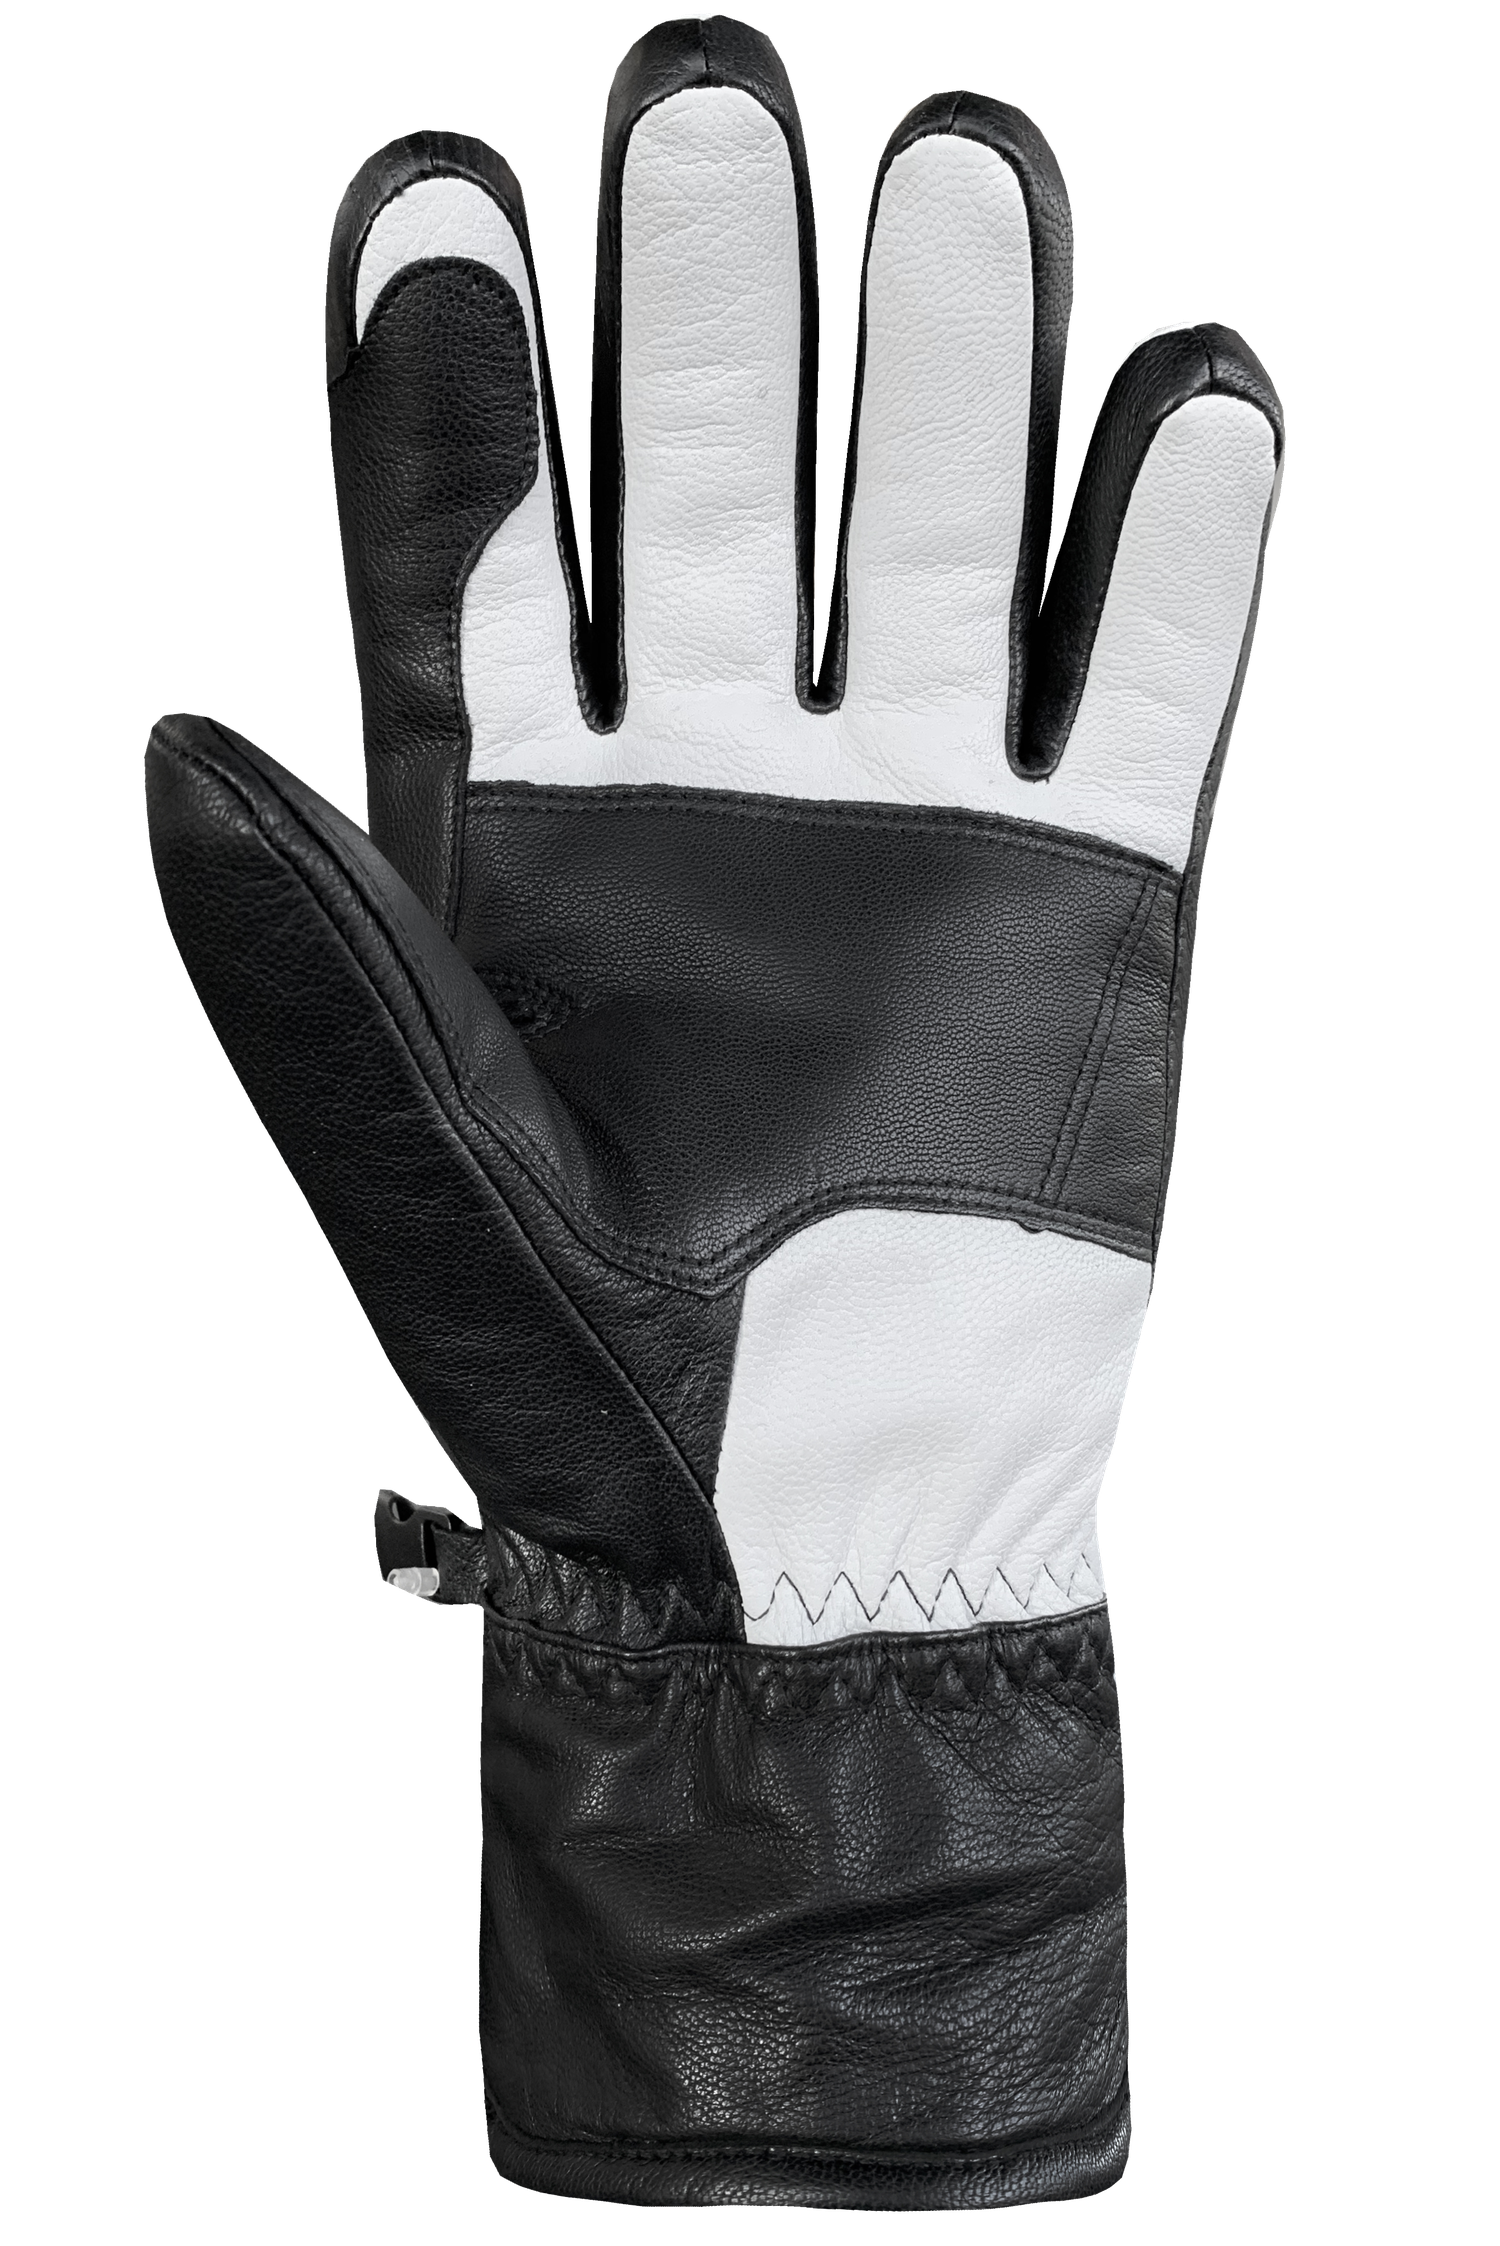 Son Of T 3 Gloves - Junior, White/Black